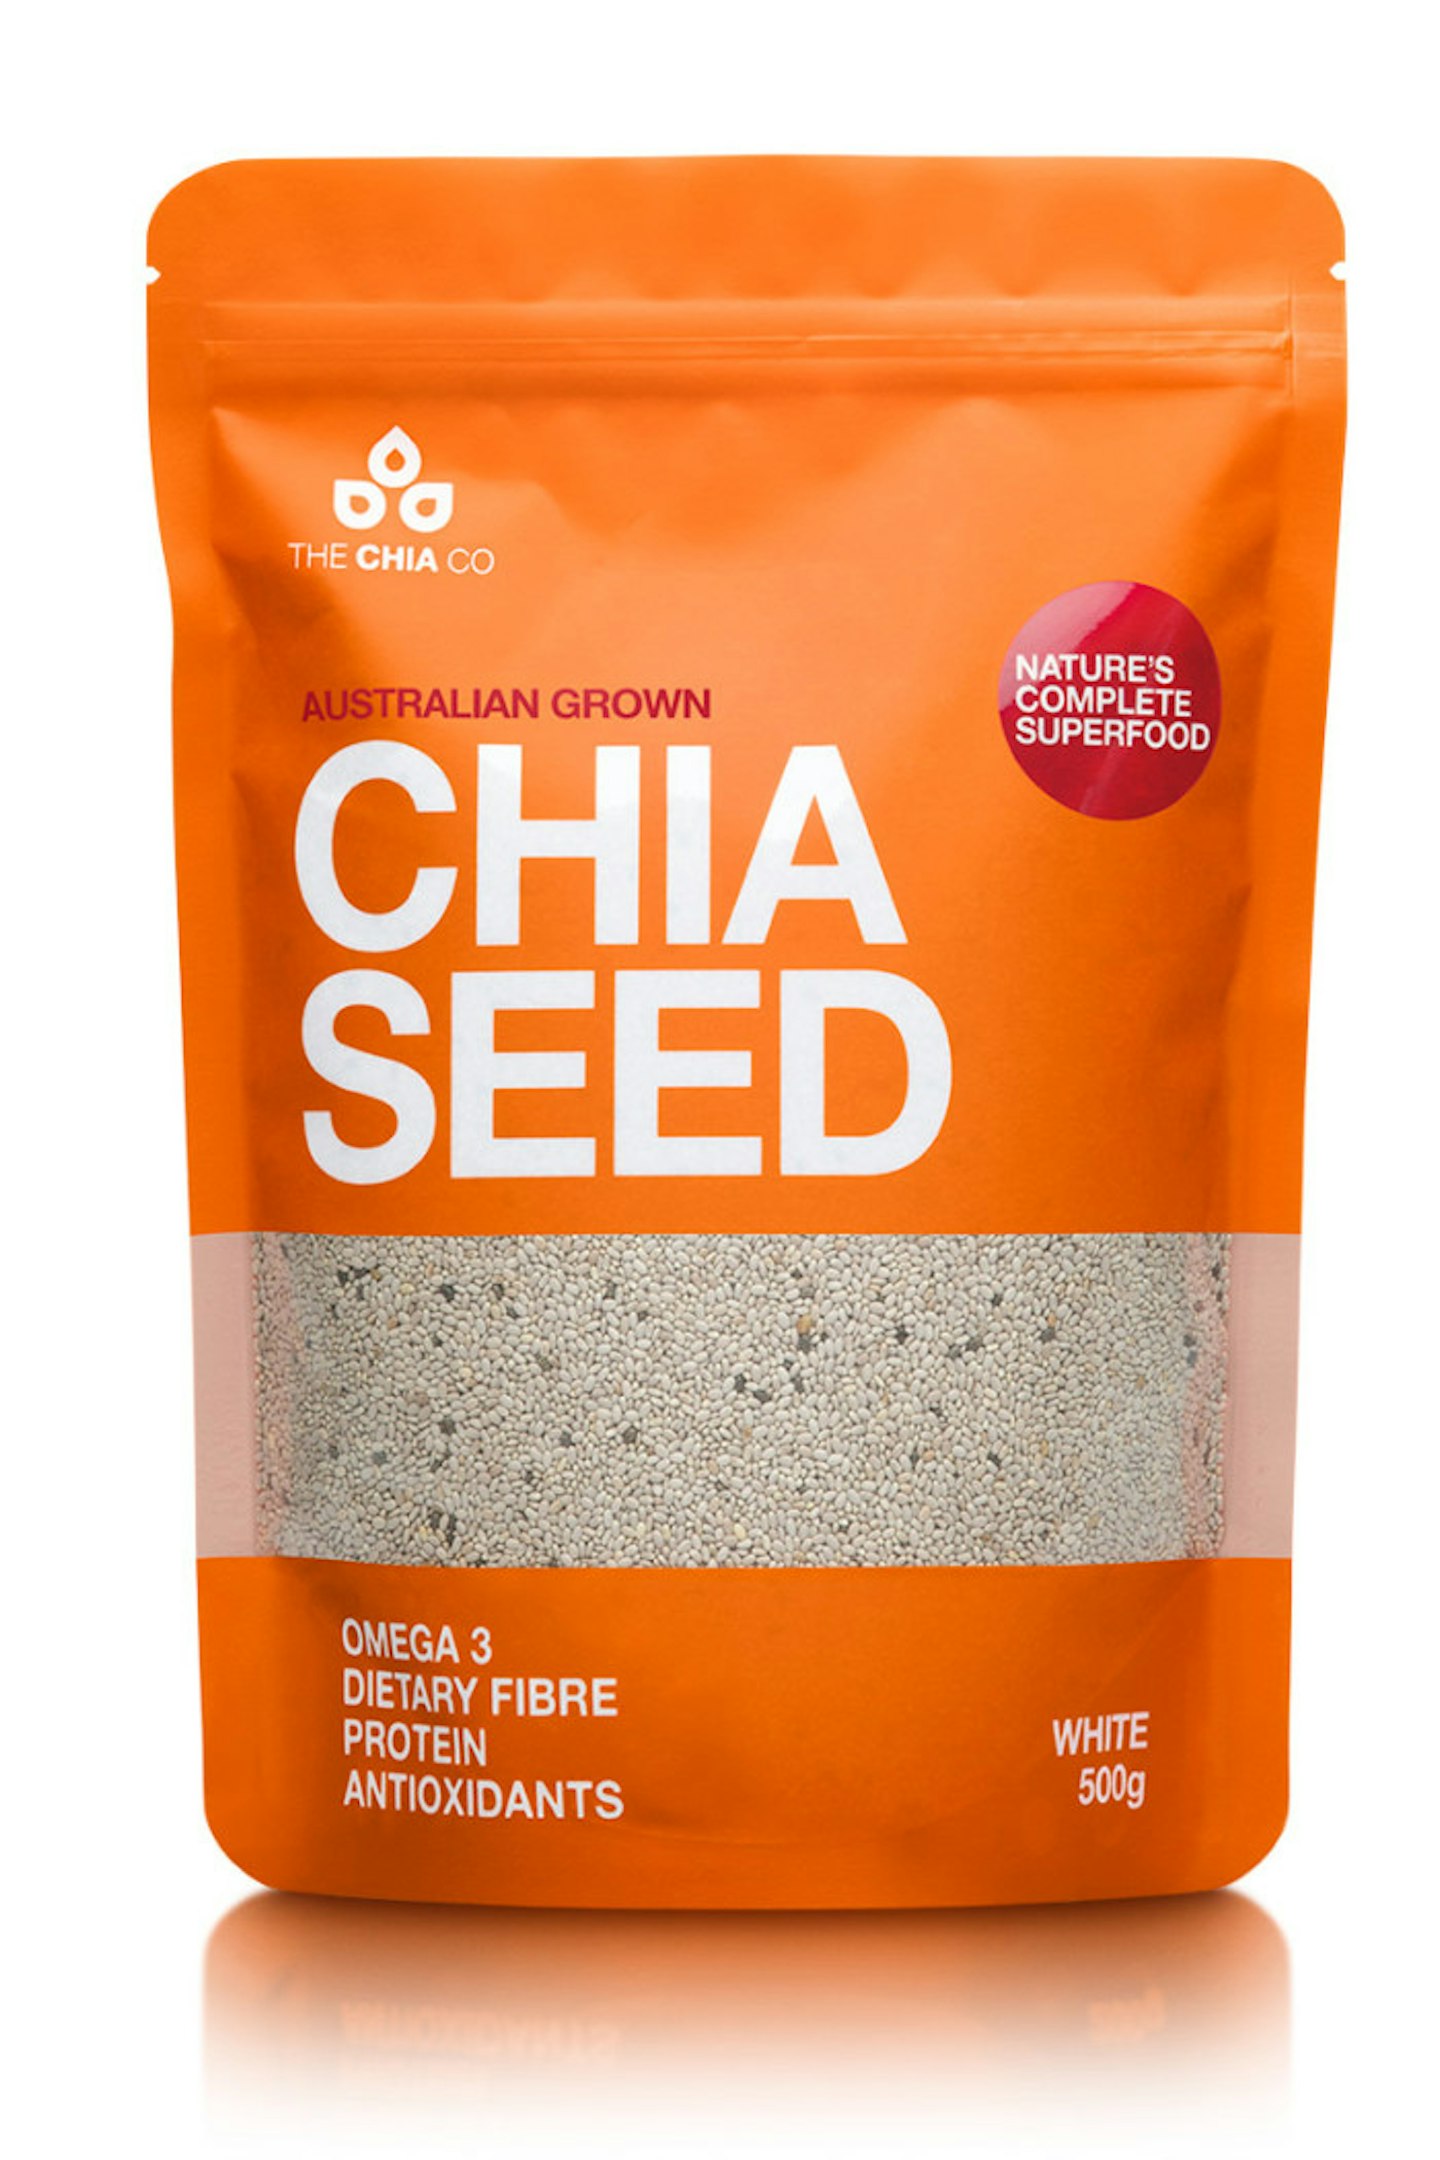 The Chia Co. Chia Seeds, £4.95